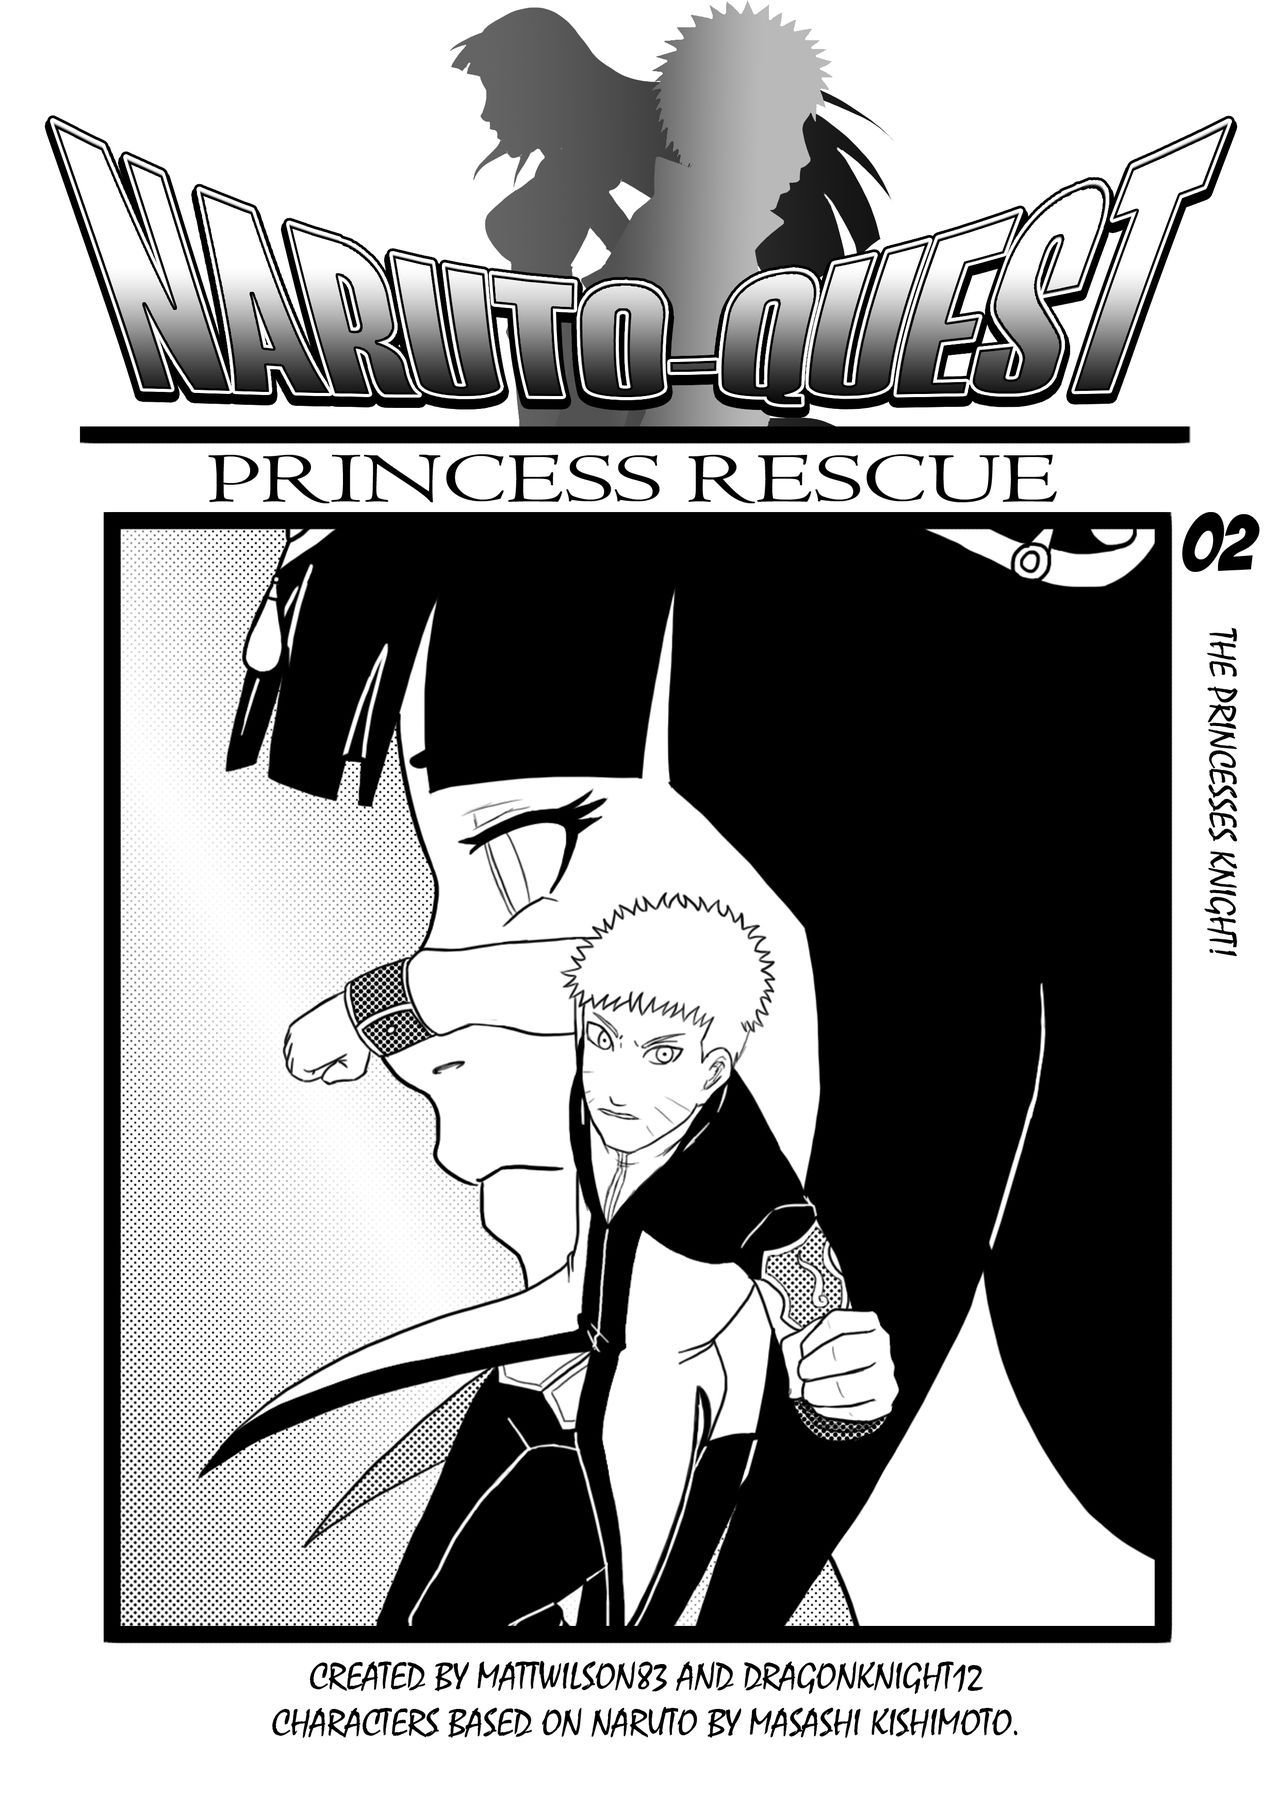 NarutoQuest: Princess Rescue 0-7 30